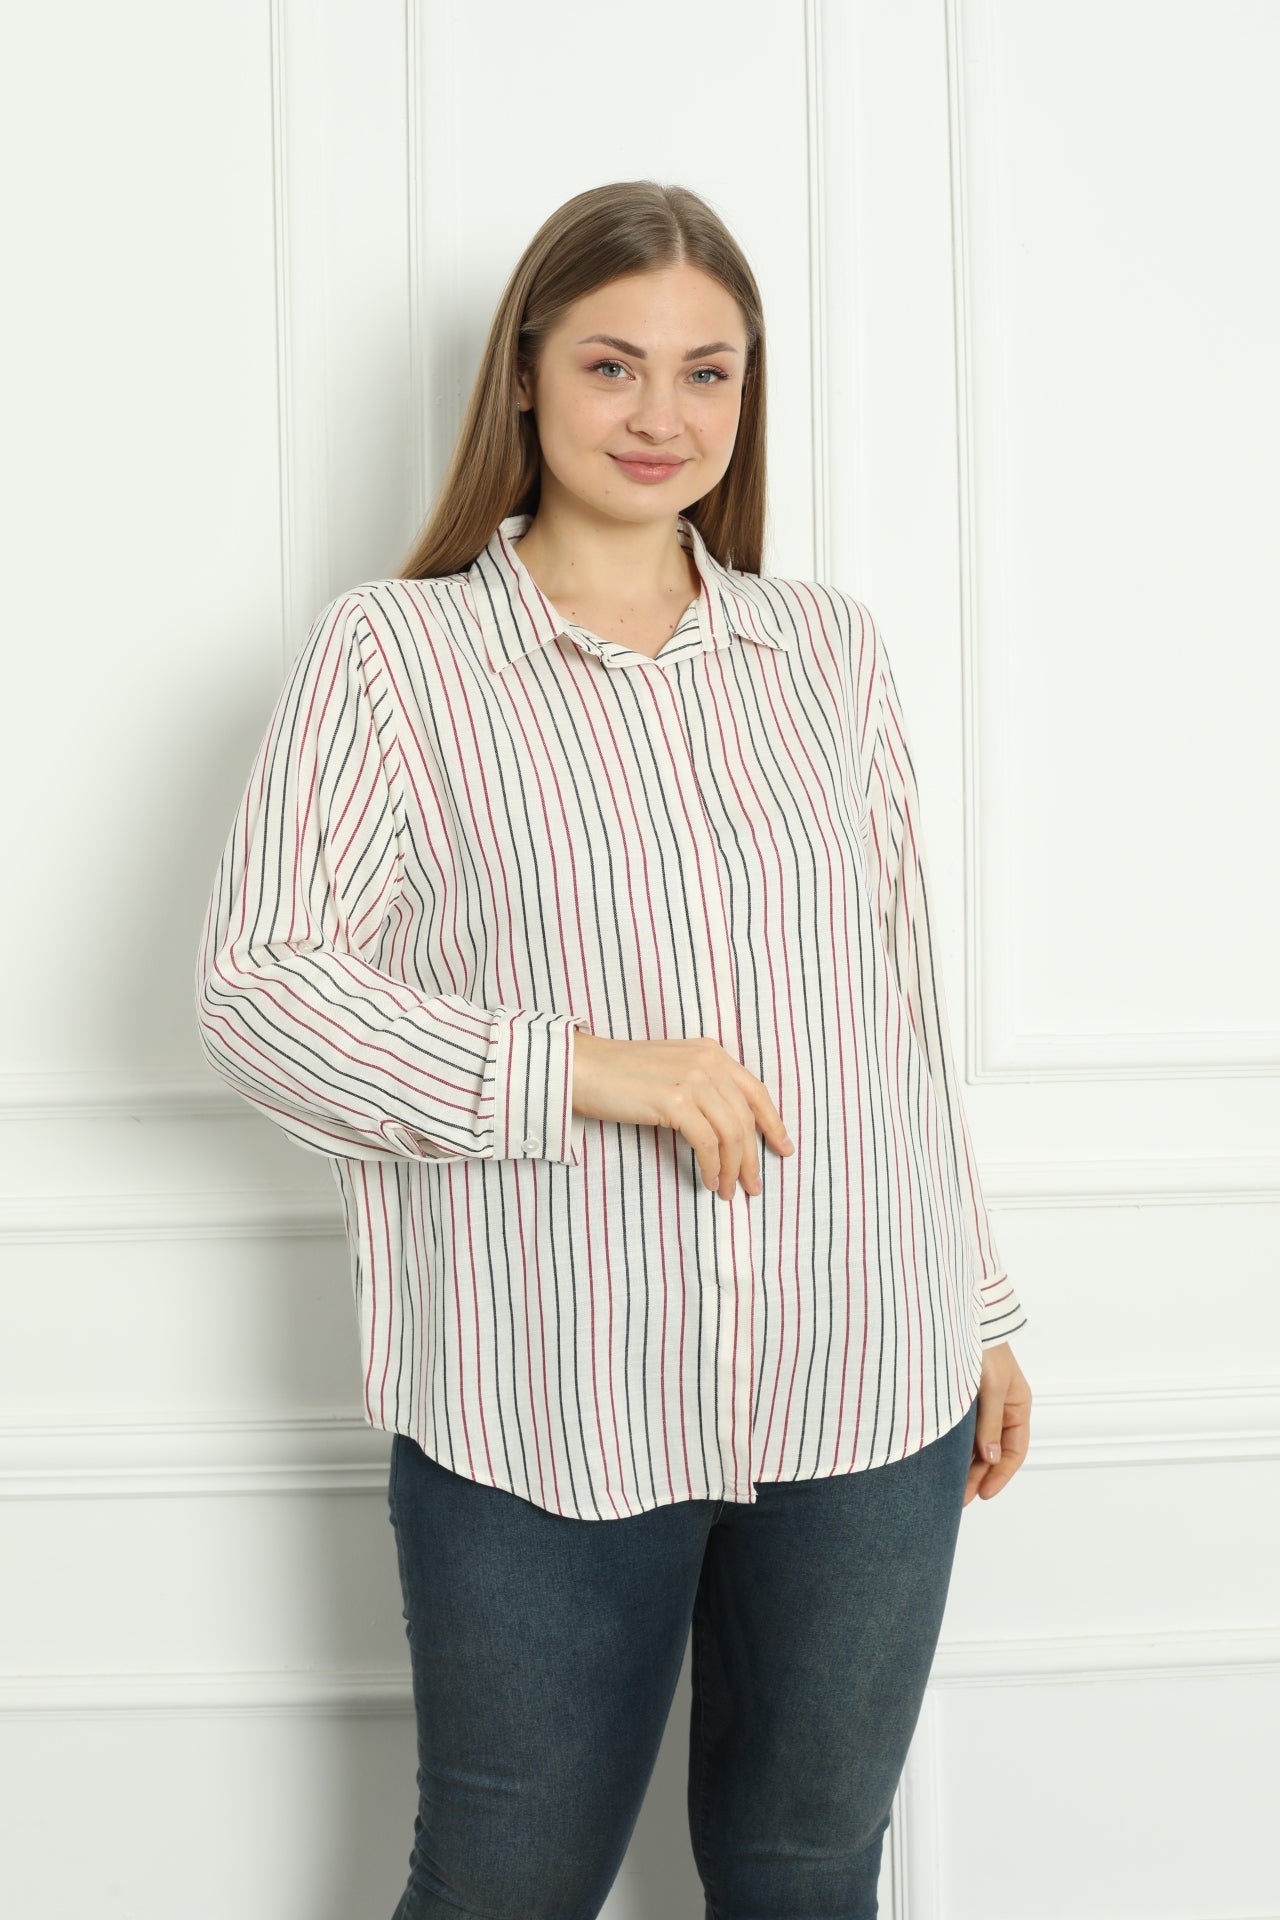 Ριγέ γυναικείο πουκάμισο βισκόζη σε μεγάλα μεγέθη - Κόκκινο